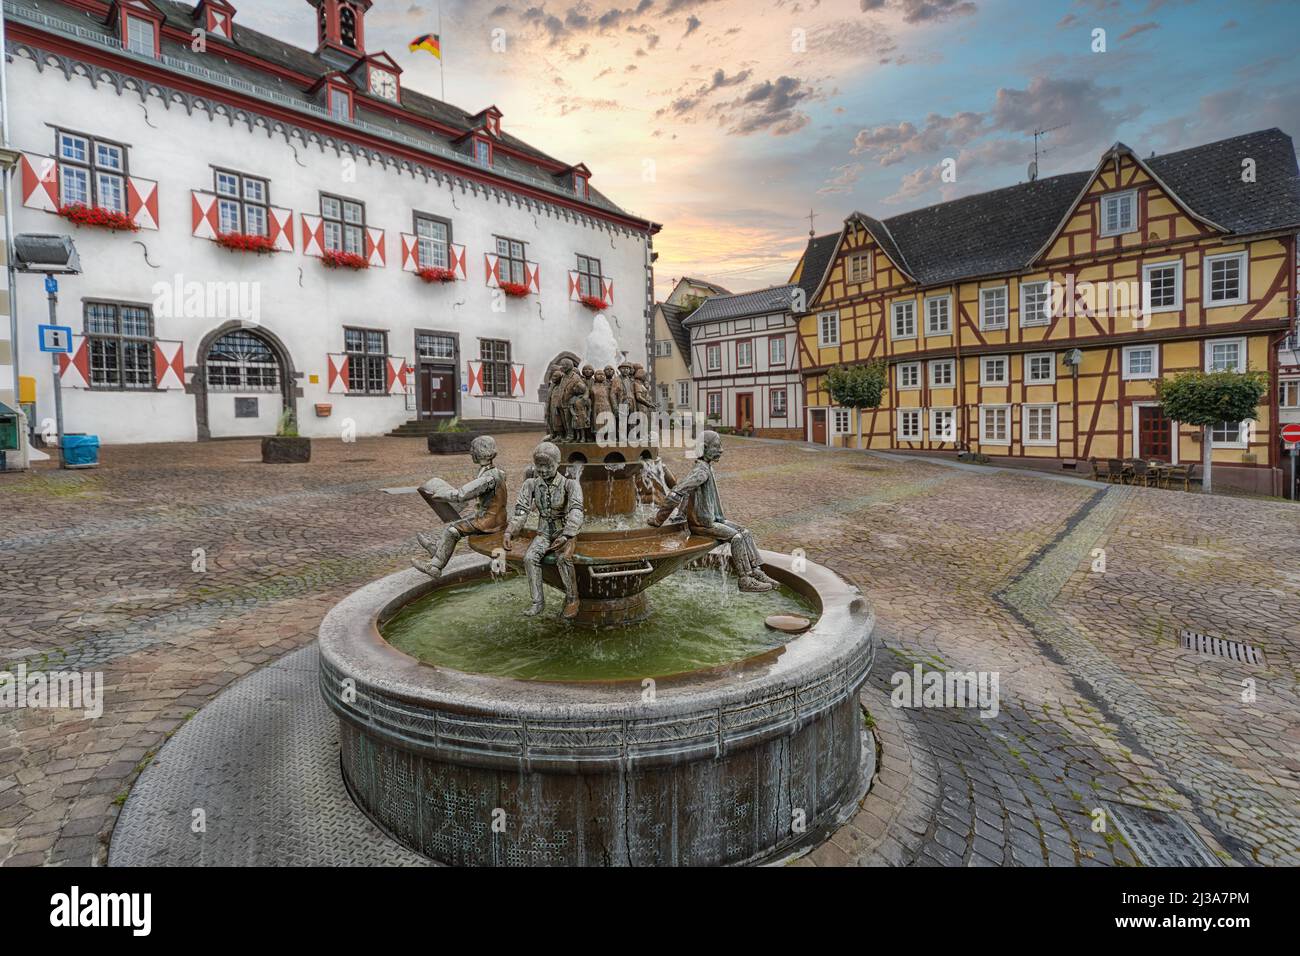 Fontana in rame nel mezzo del vecchio mercato con case a graticcio e il municipio sullo sfondo a Linz am Rhein, Germania. Foto Stock